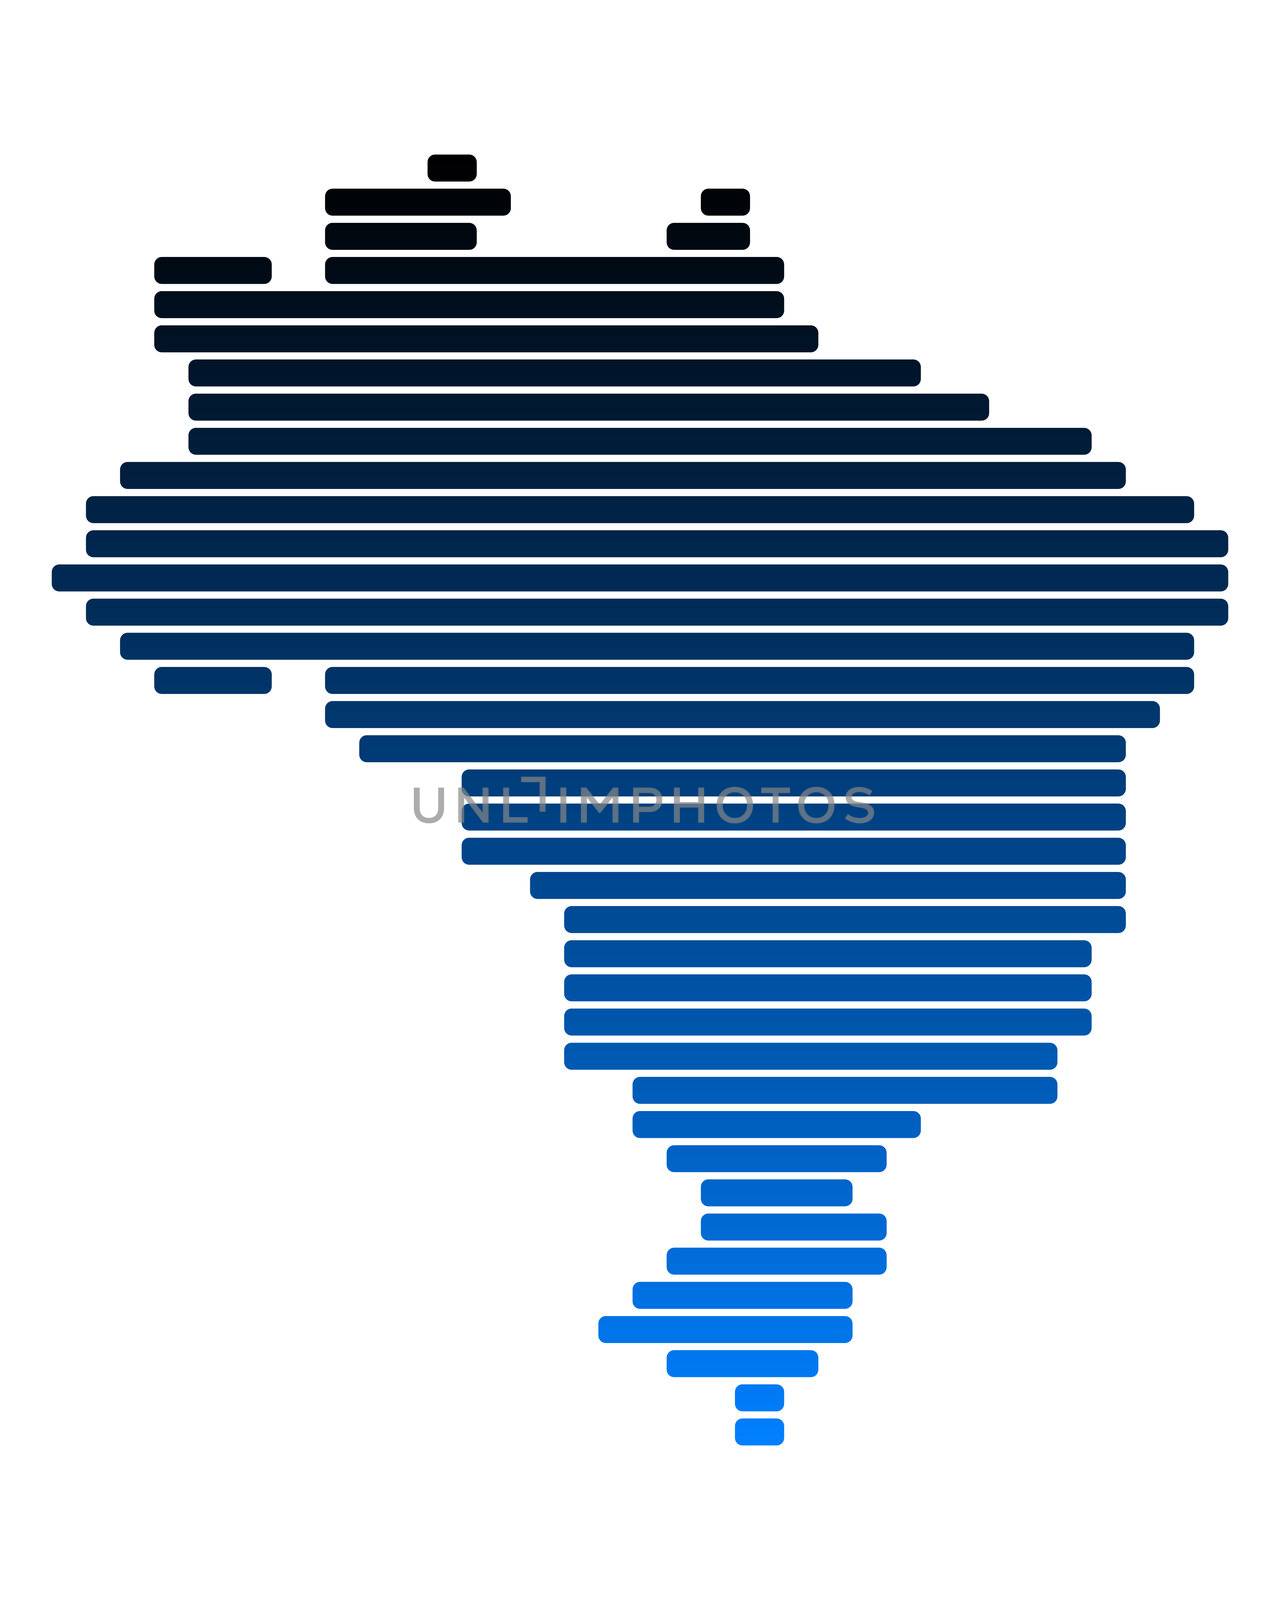 Map of Brazil by rbiedermann